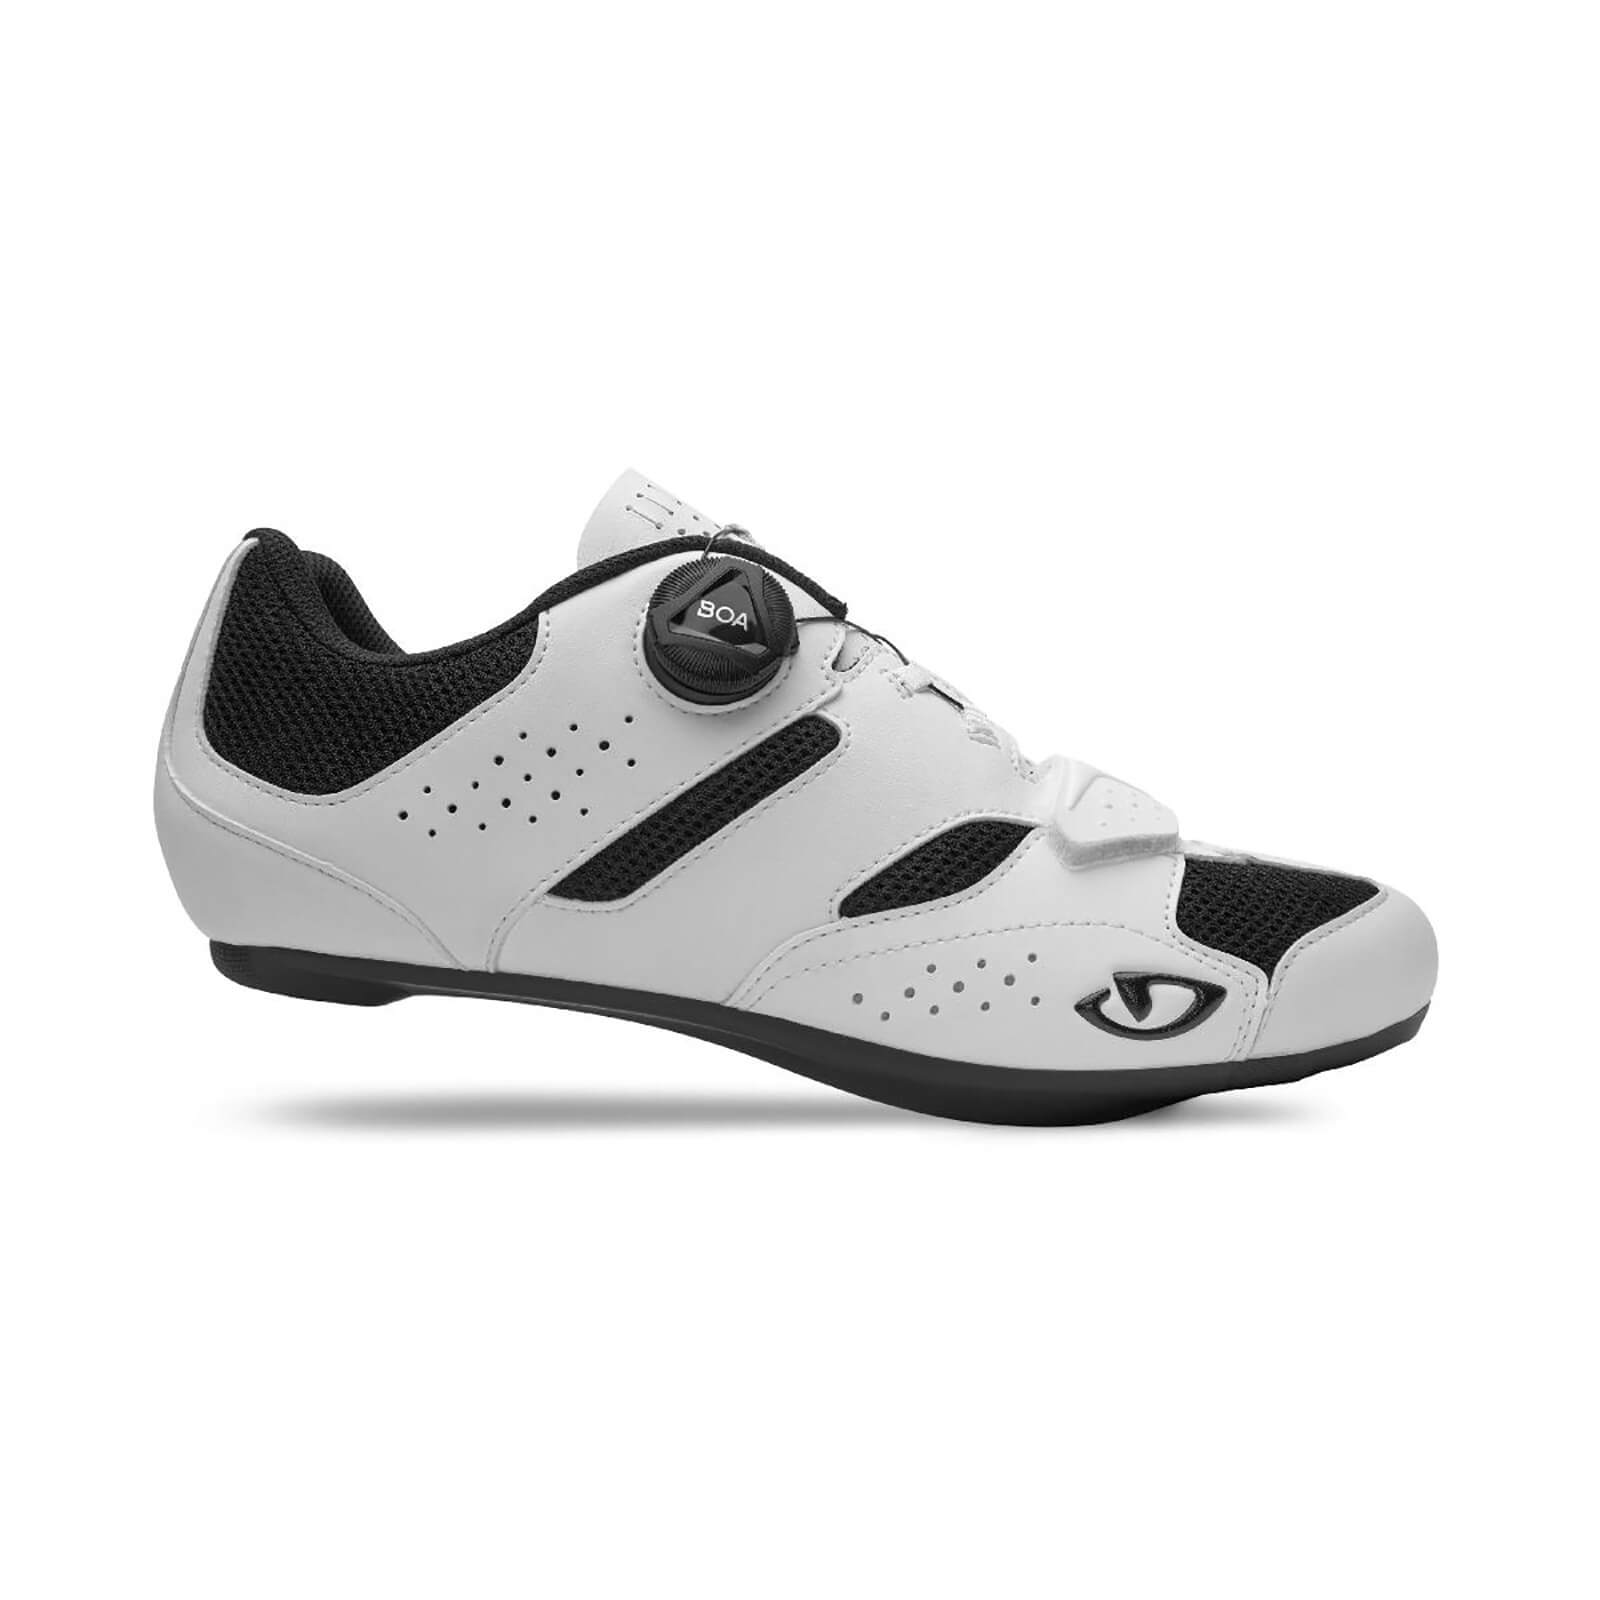 Giro Savix II Road Shoe - EU 47 - White